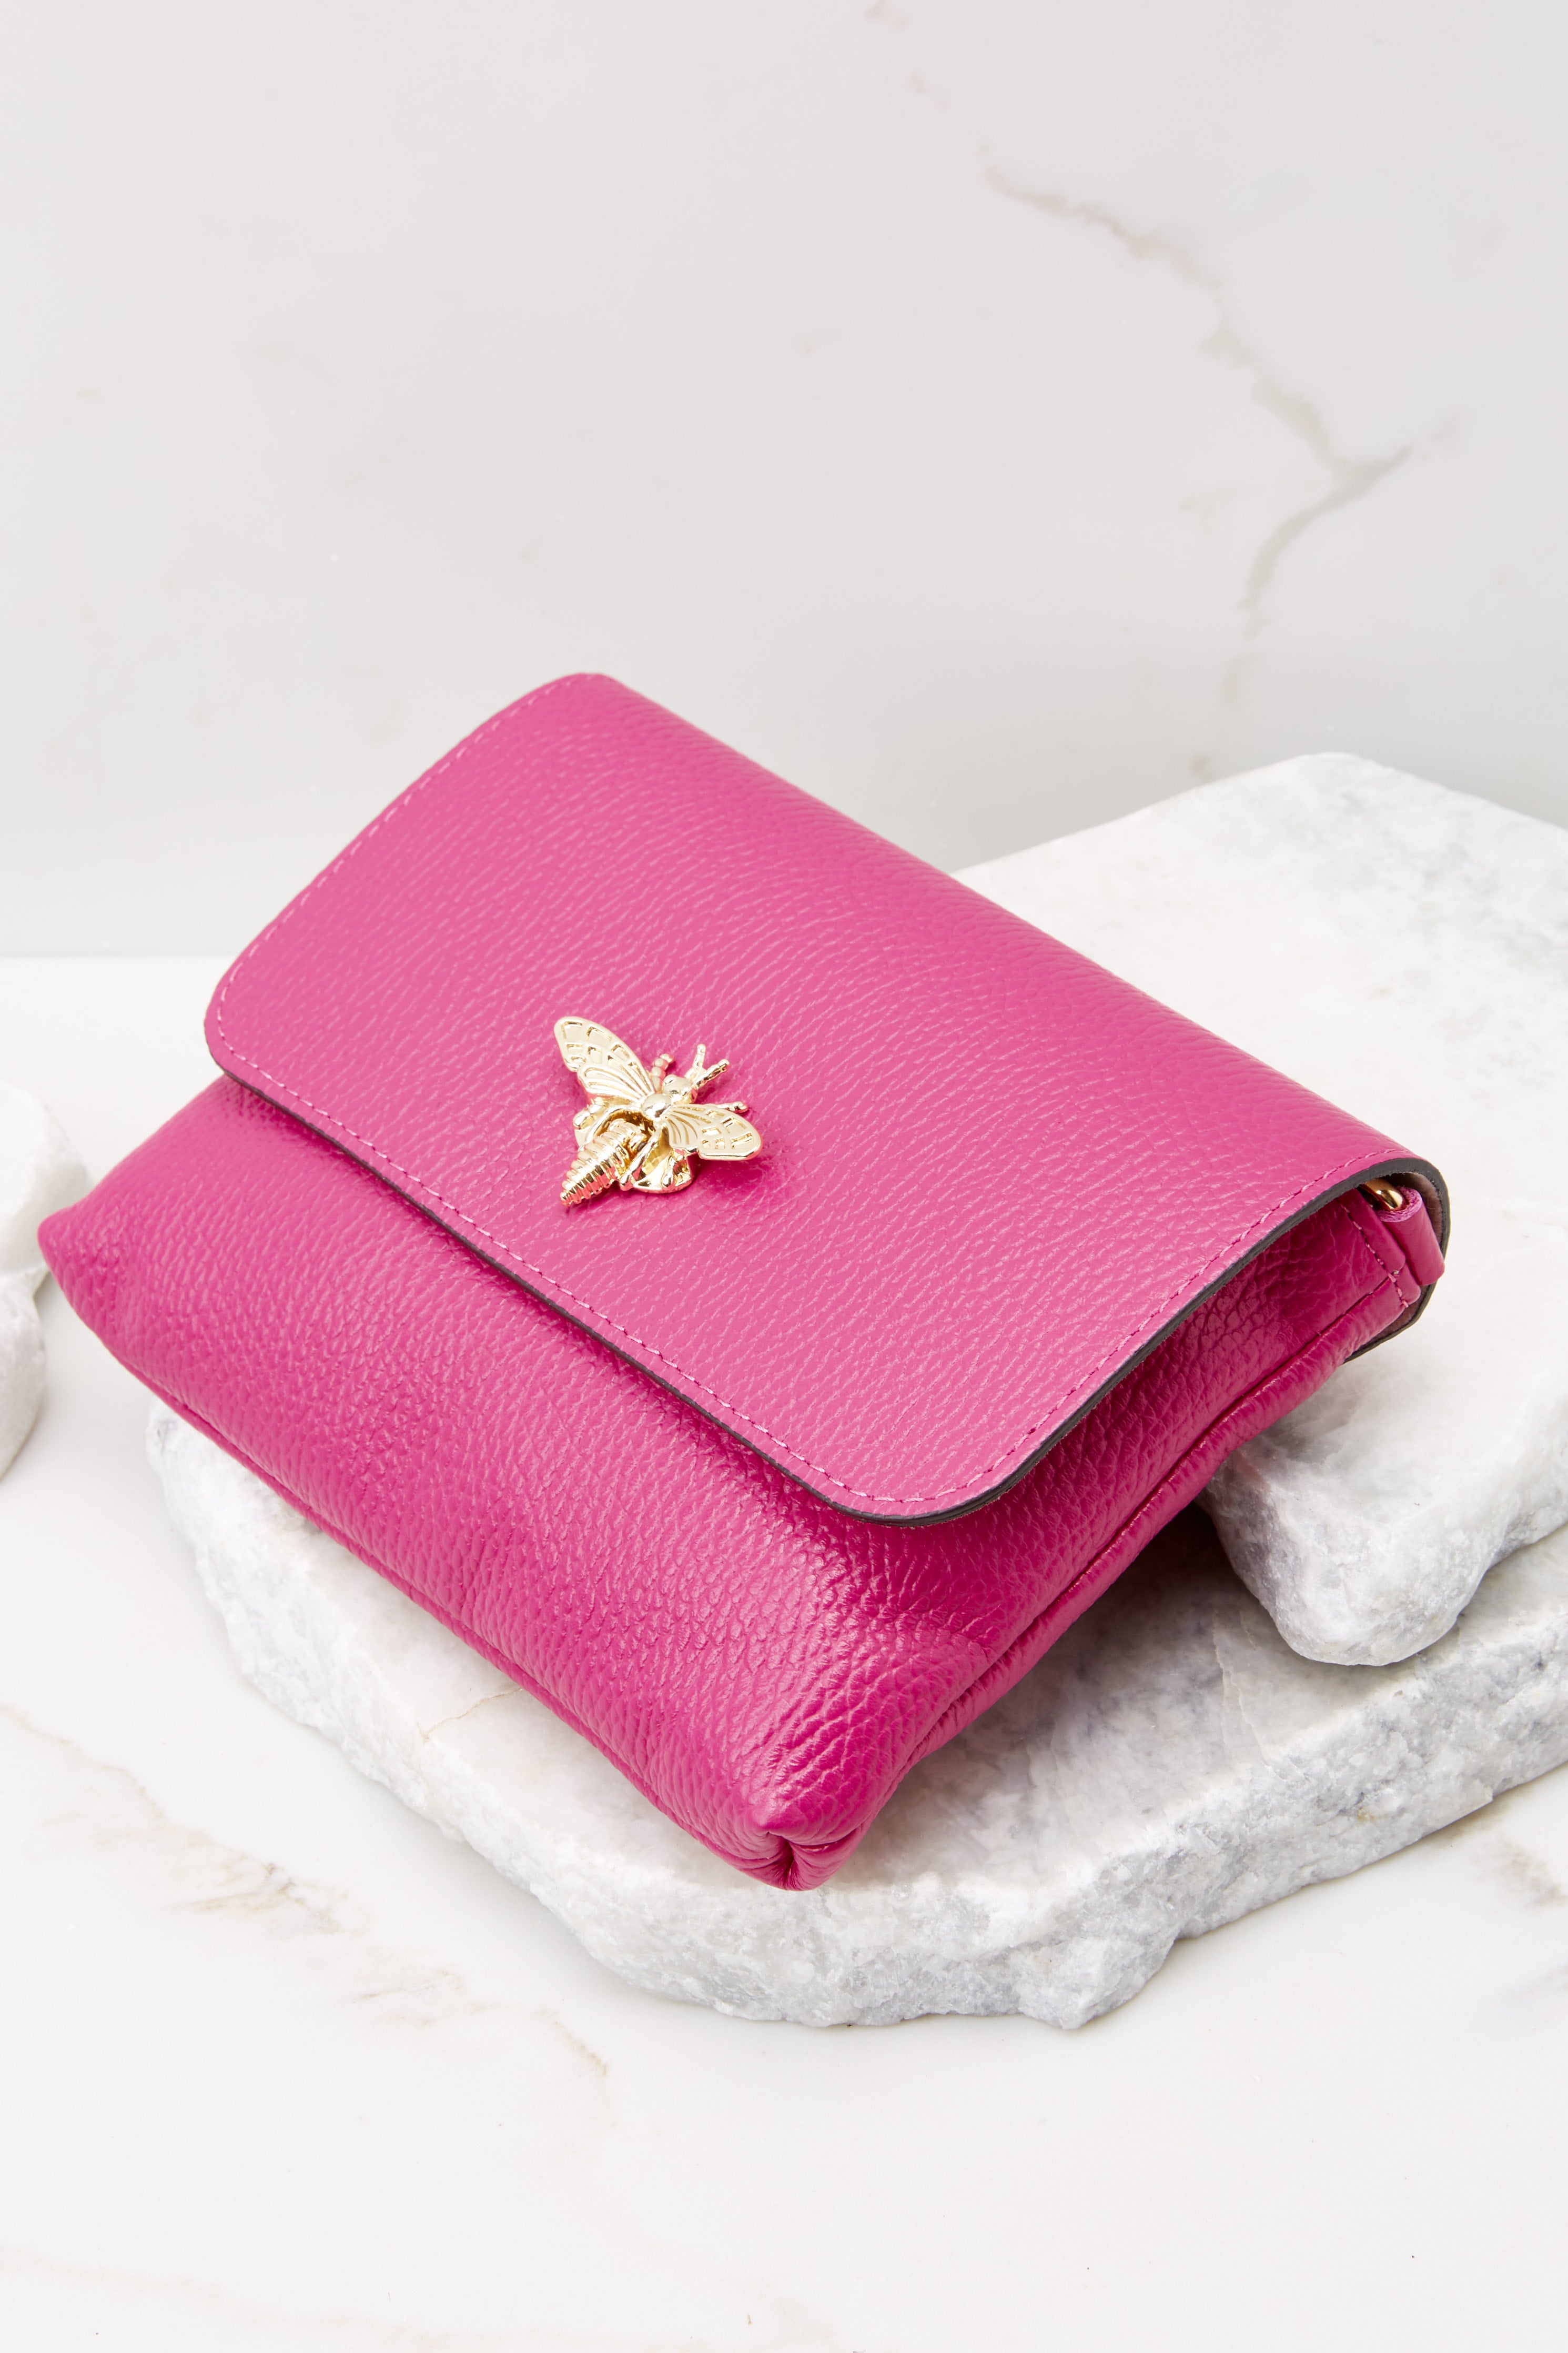 6 Work Smarter Hot Pink Leather Bag at reddress.com